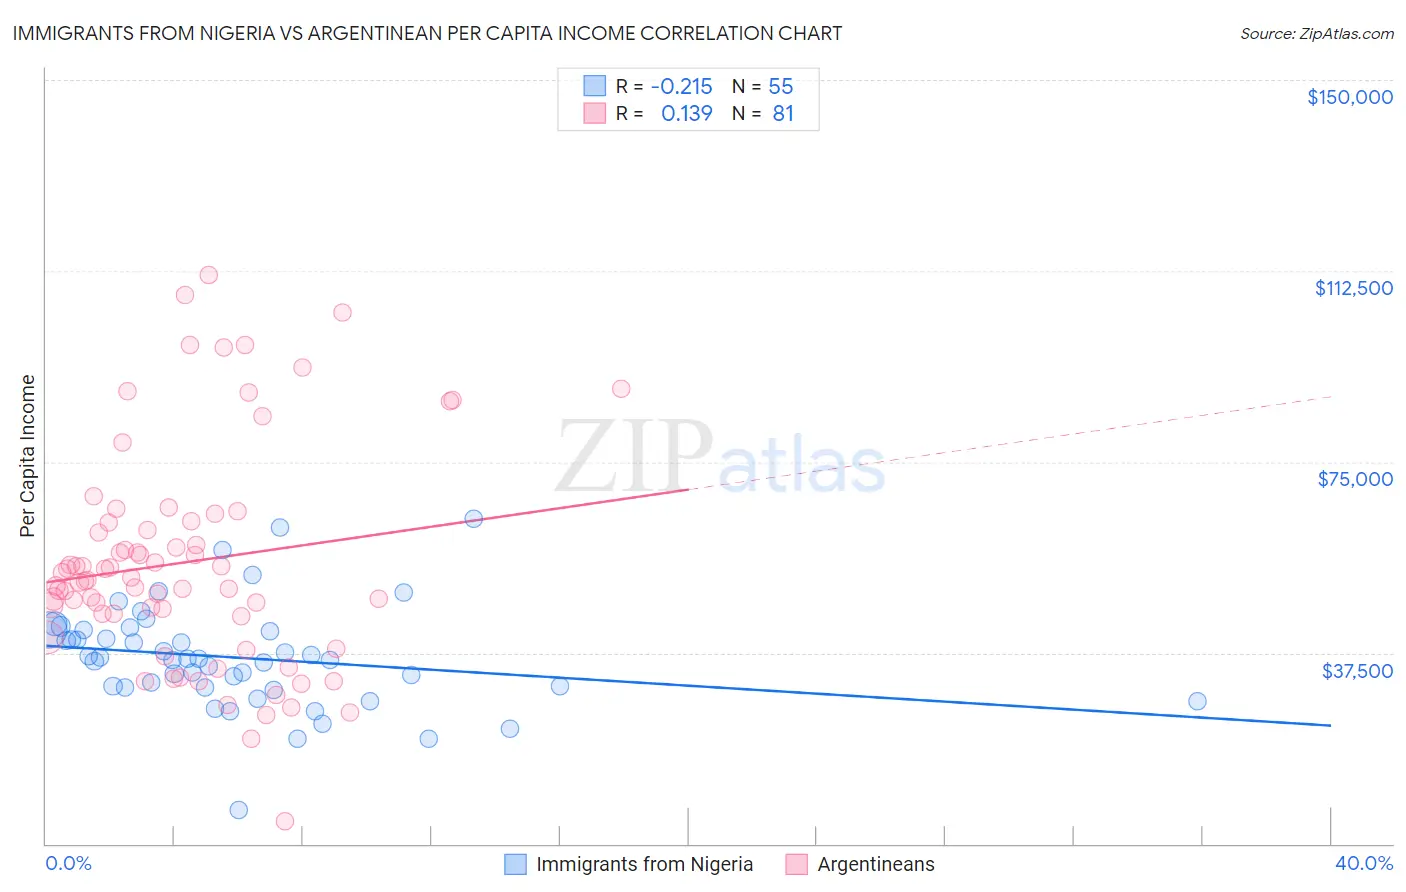 Immigrants from Nigeria vs Argentinean Per Capita Income